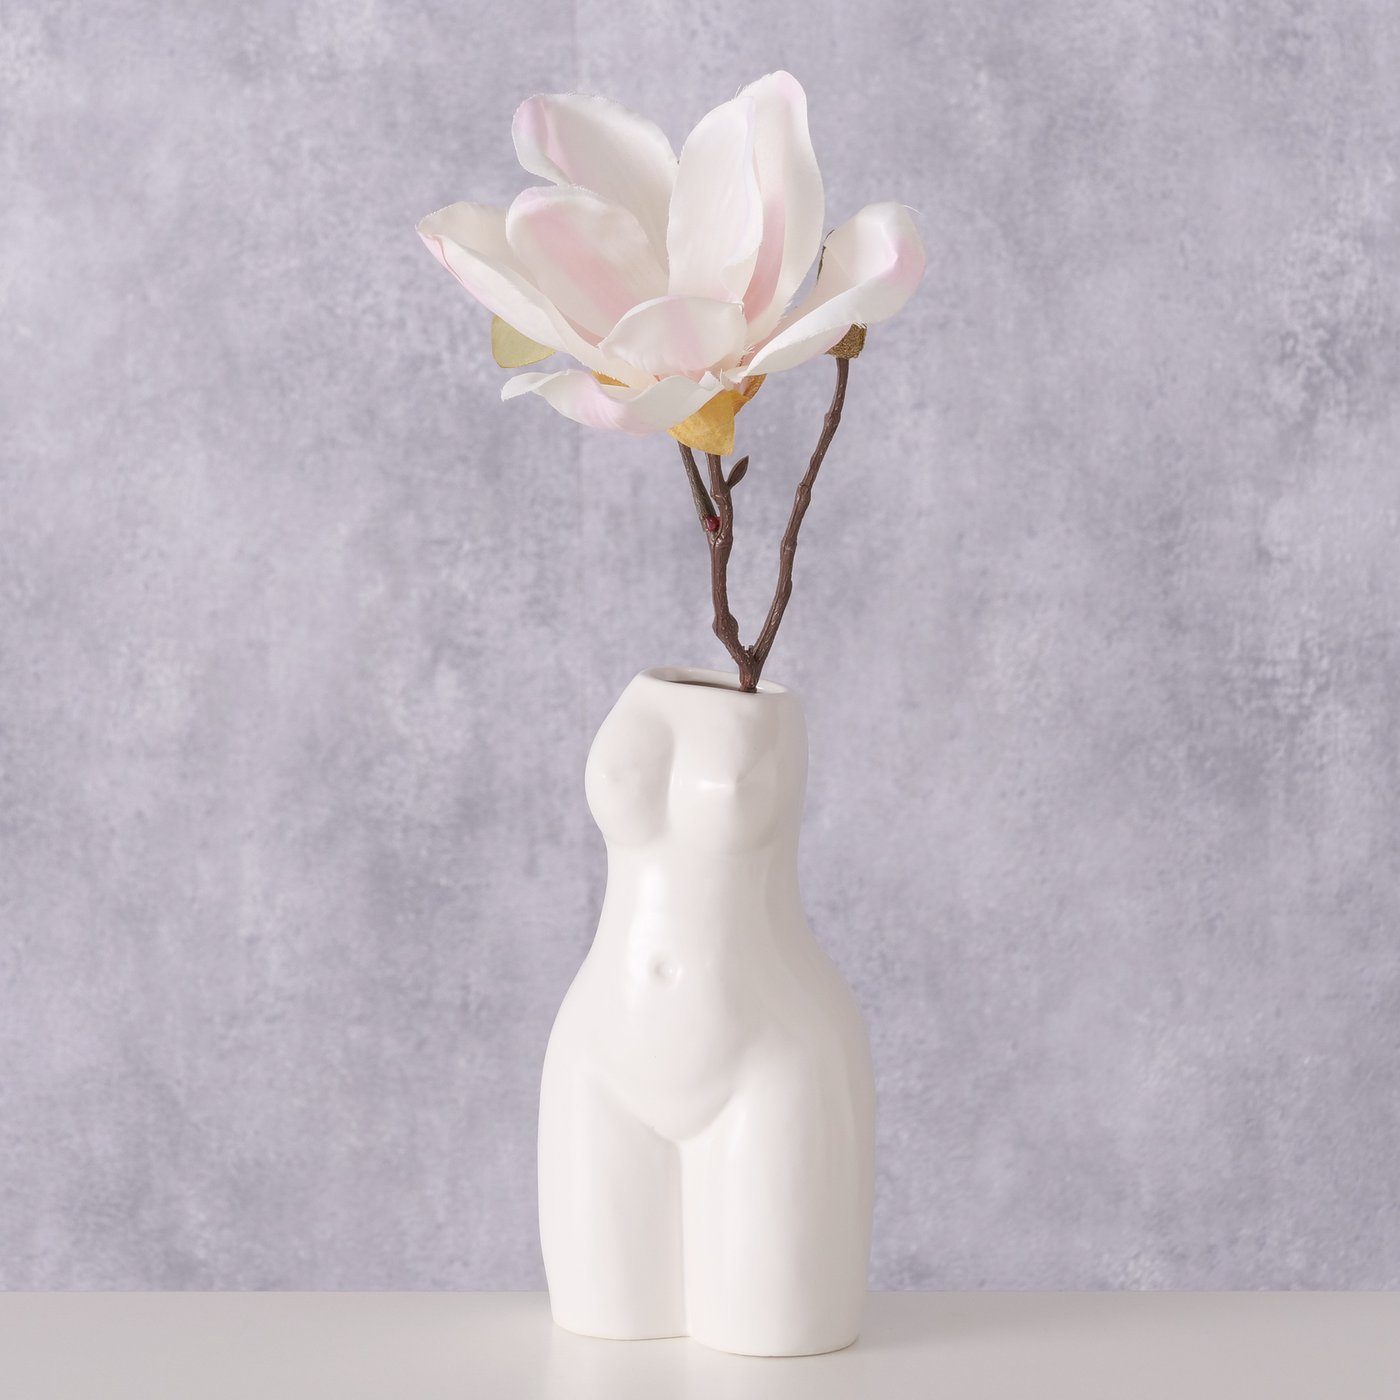 BOLTZE Dekovase "Aurice" aus Porzellan in weiß, Vase Blumenvase